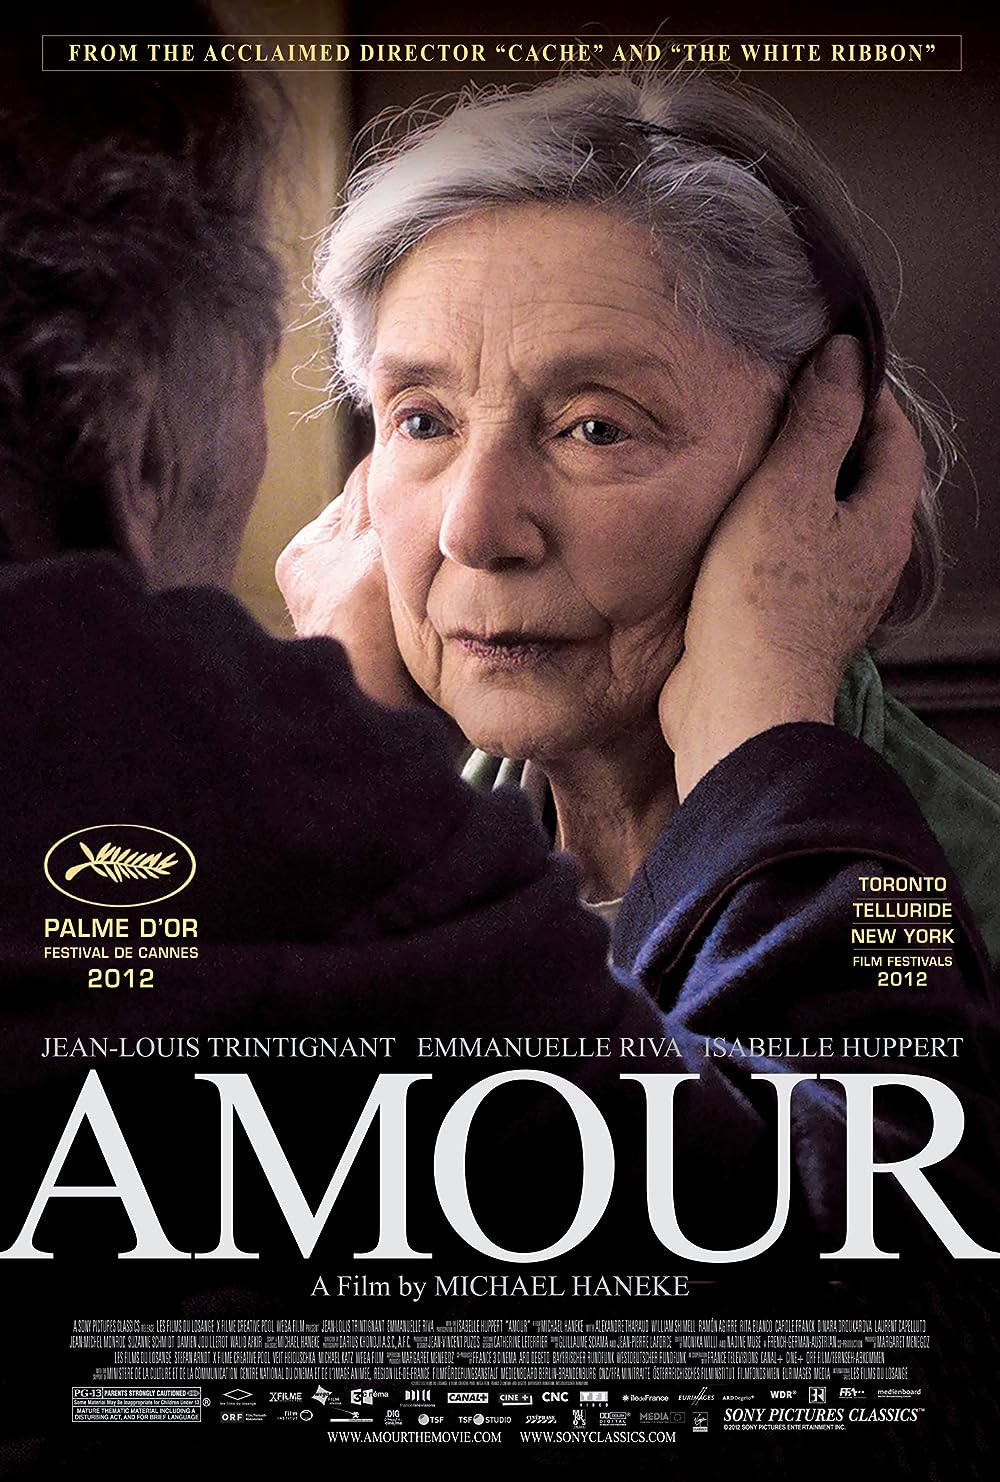 เรื่องราวกระตุ้นความคิดของความรักและความทุ่มเท: บทวิจารณ์ภาพยนตร์ของ Amour (2012)